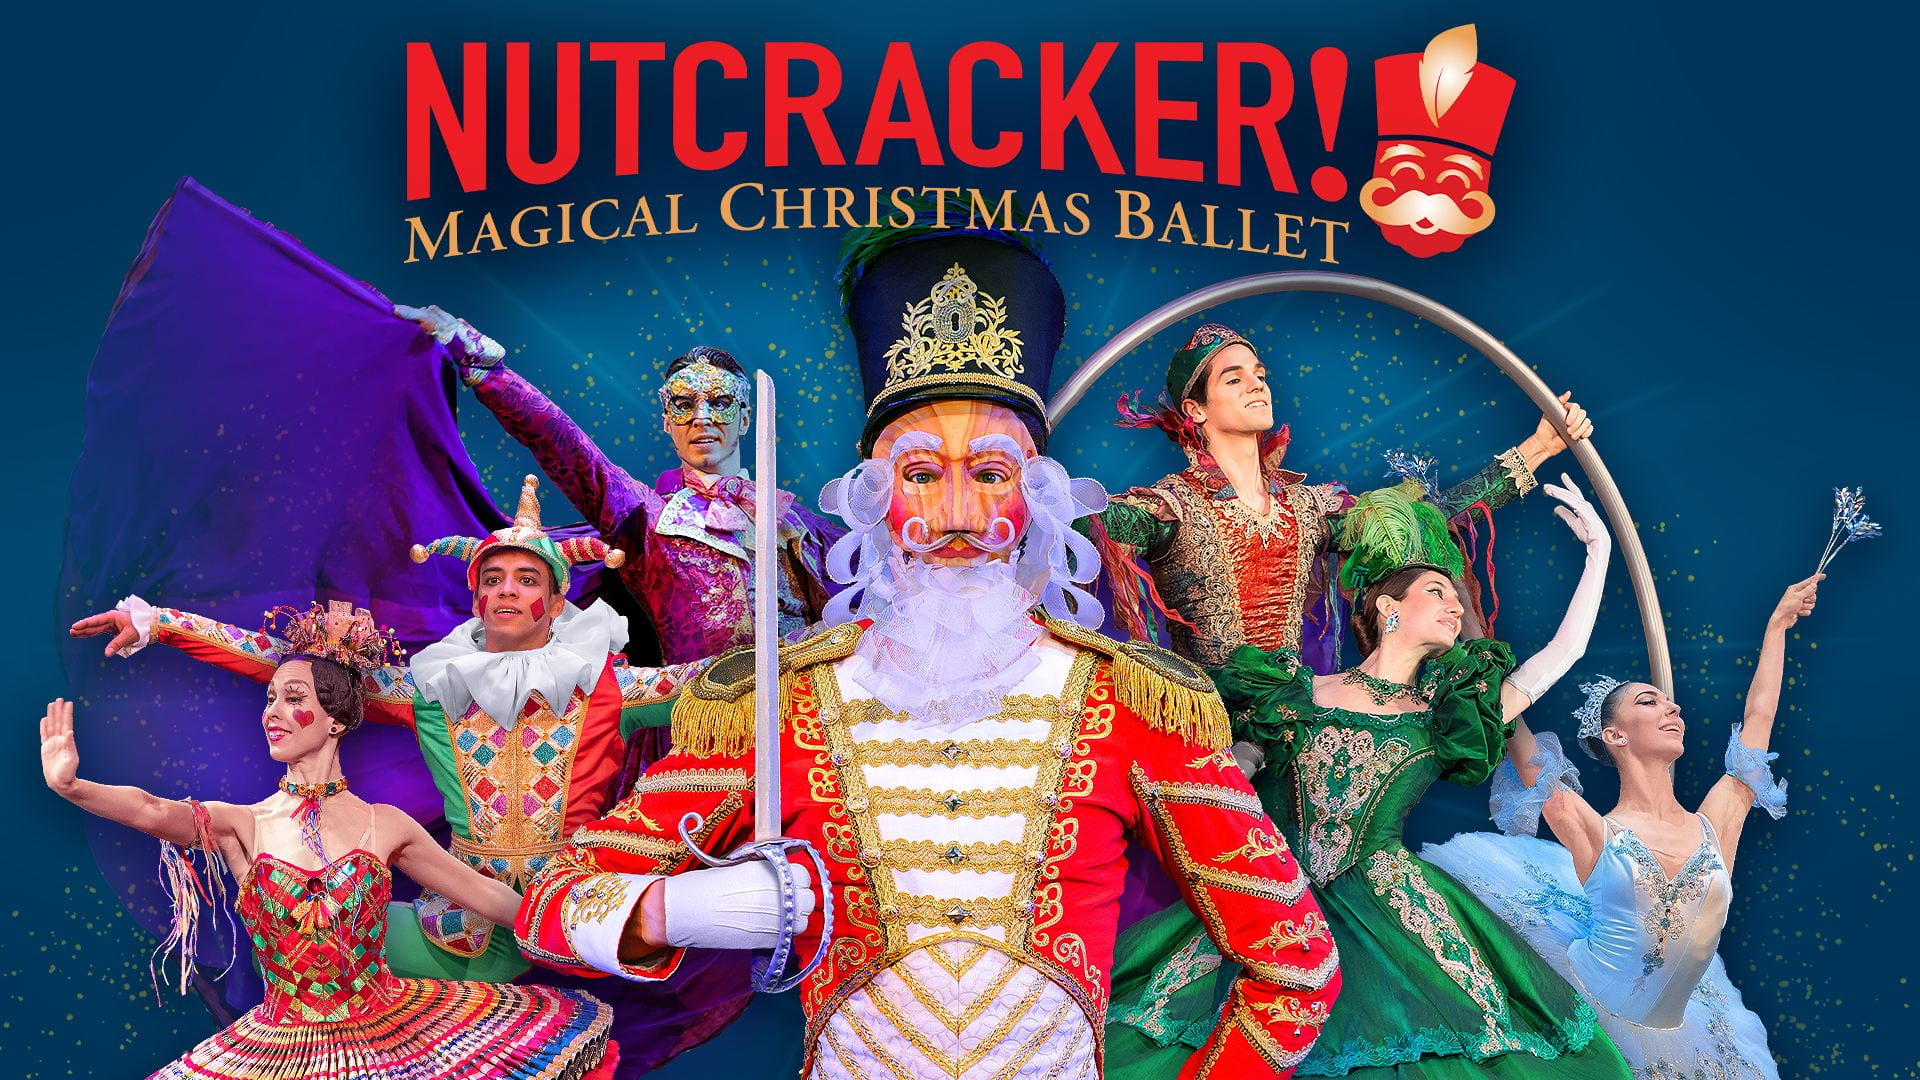 Nutcracker! Magical Ballet